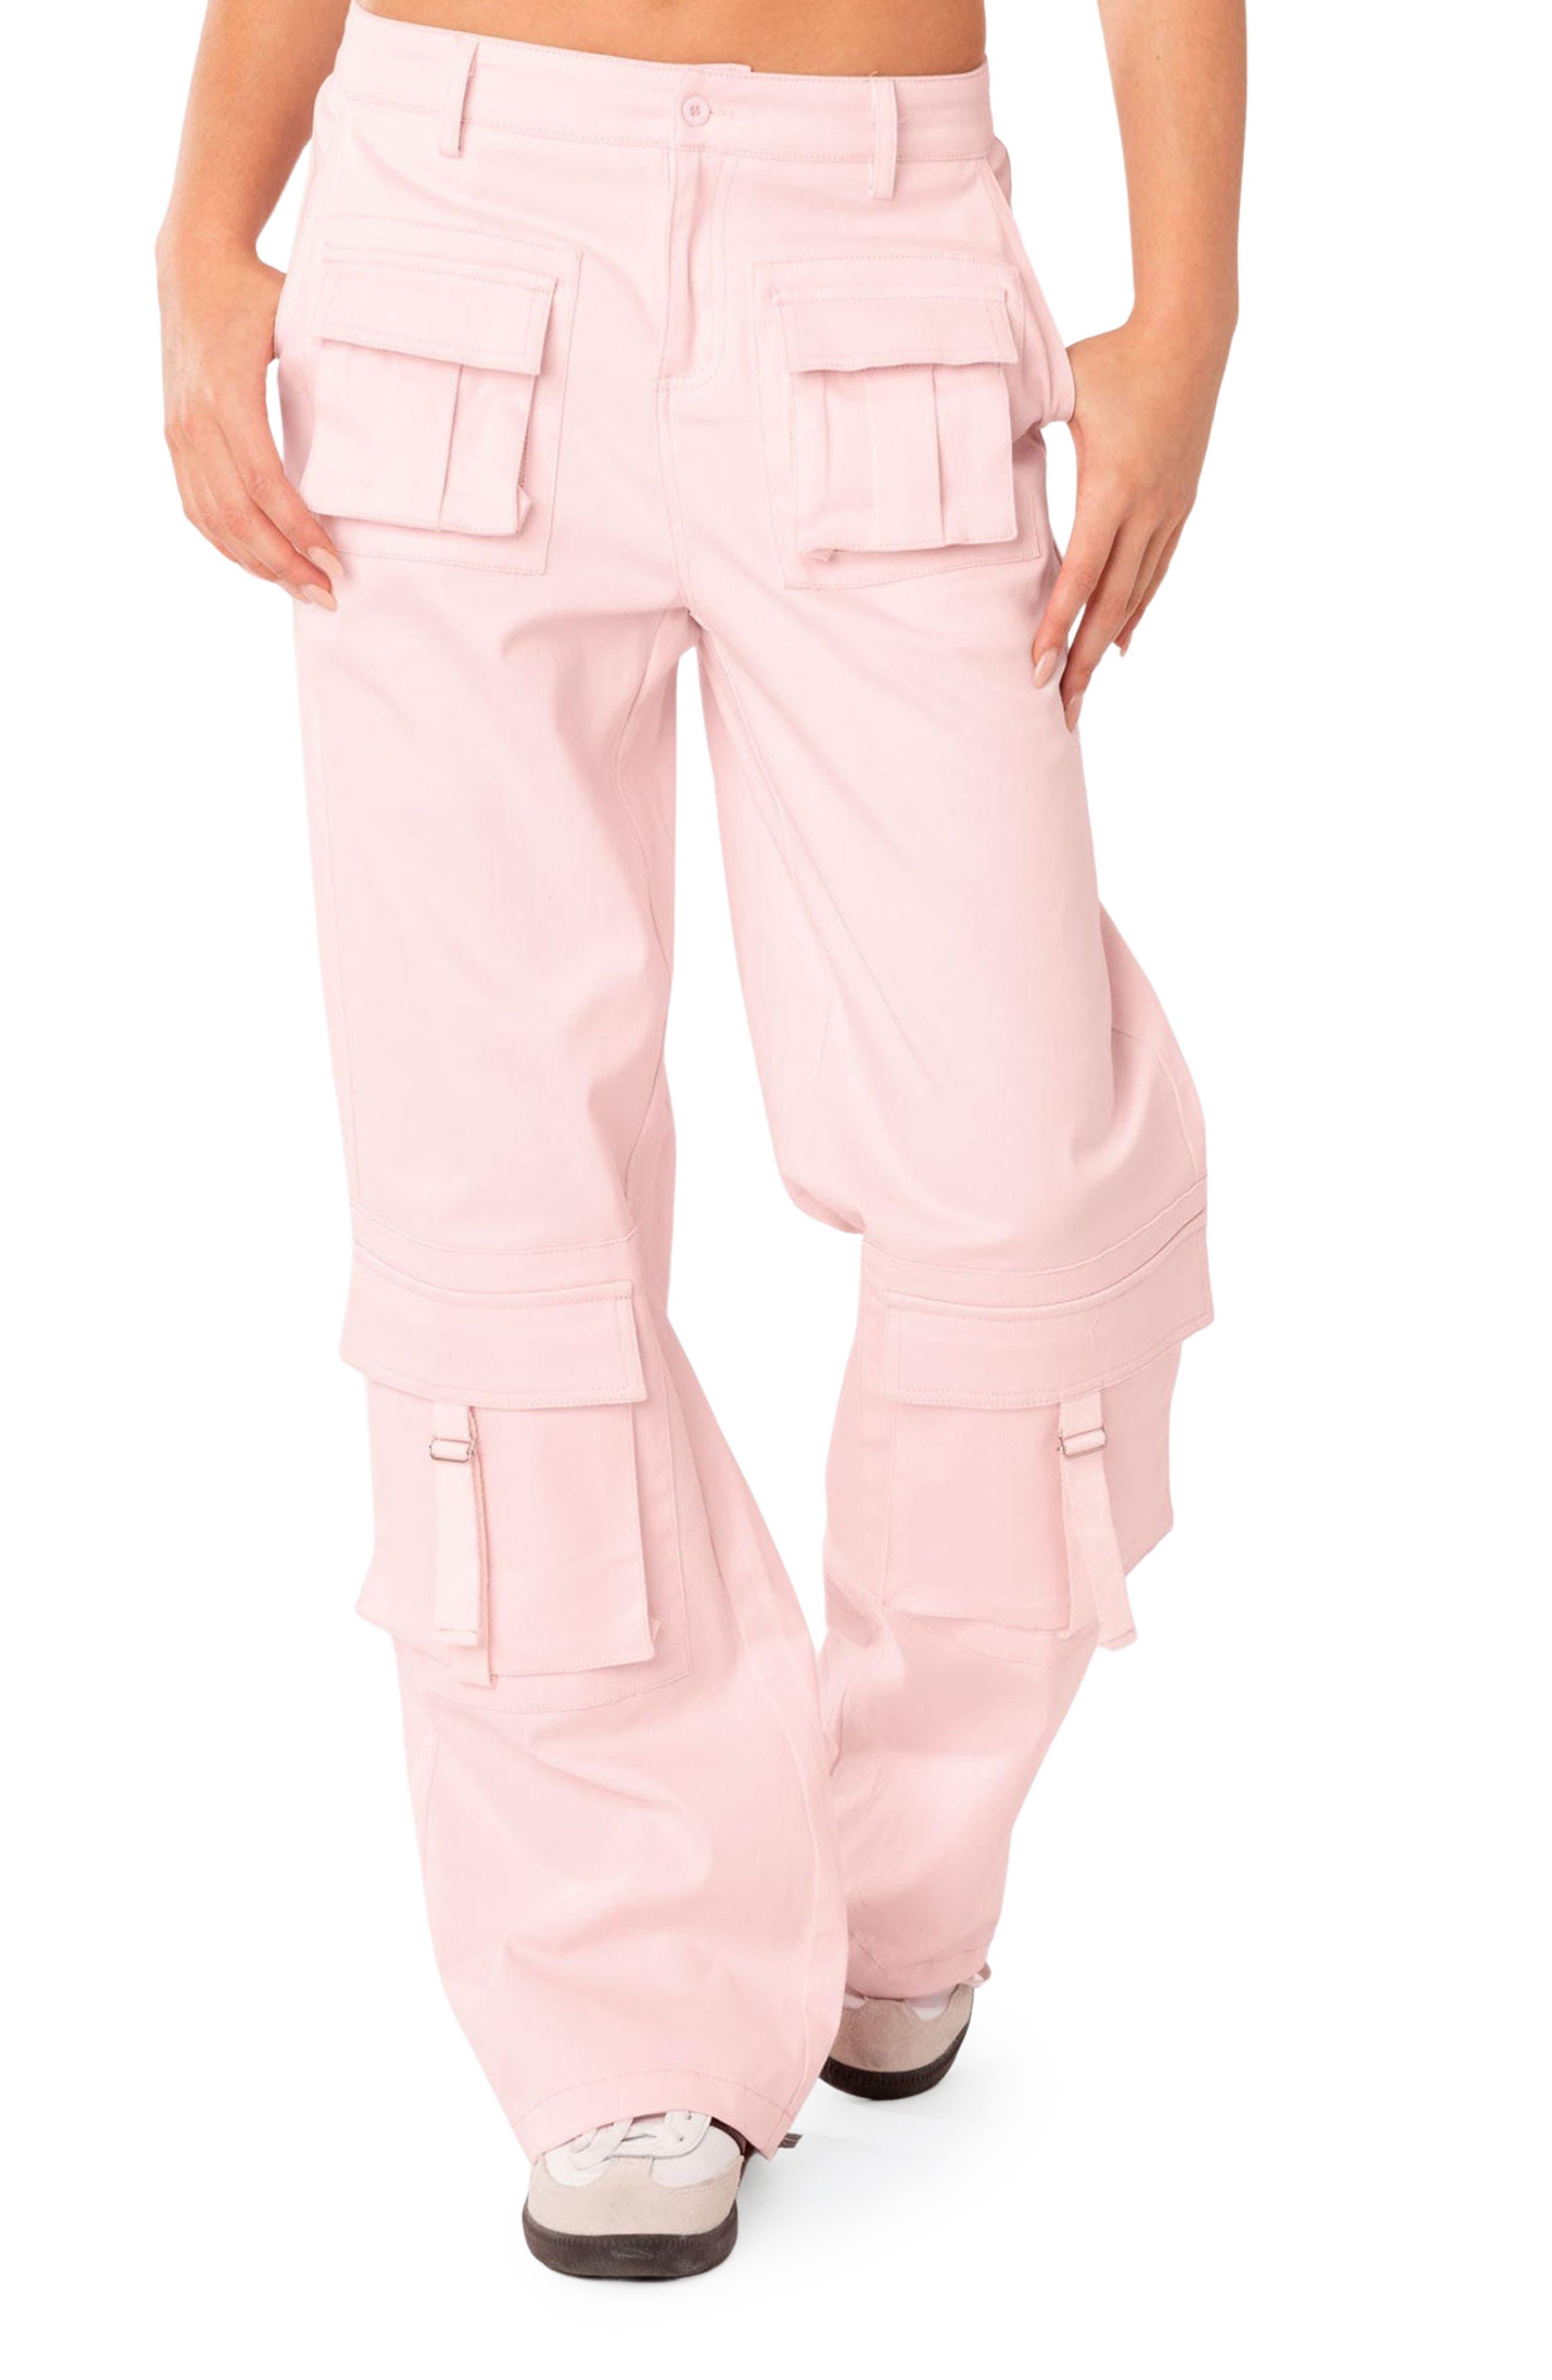 Edikted Joan Low Rise Cargo Pants in Pink | Lyst